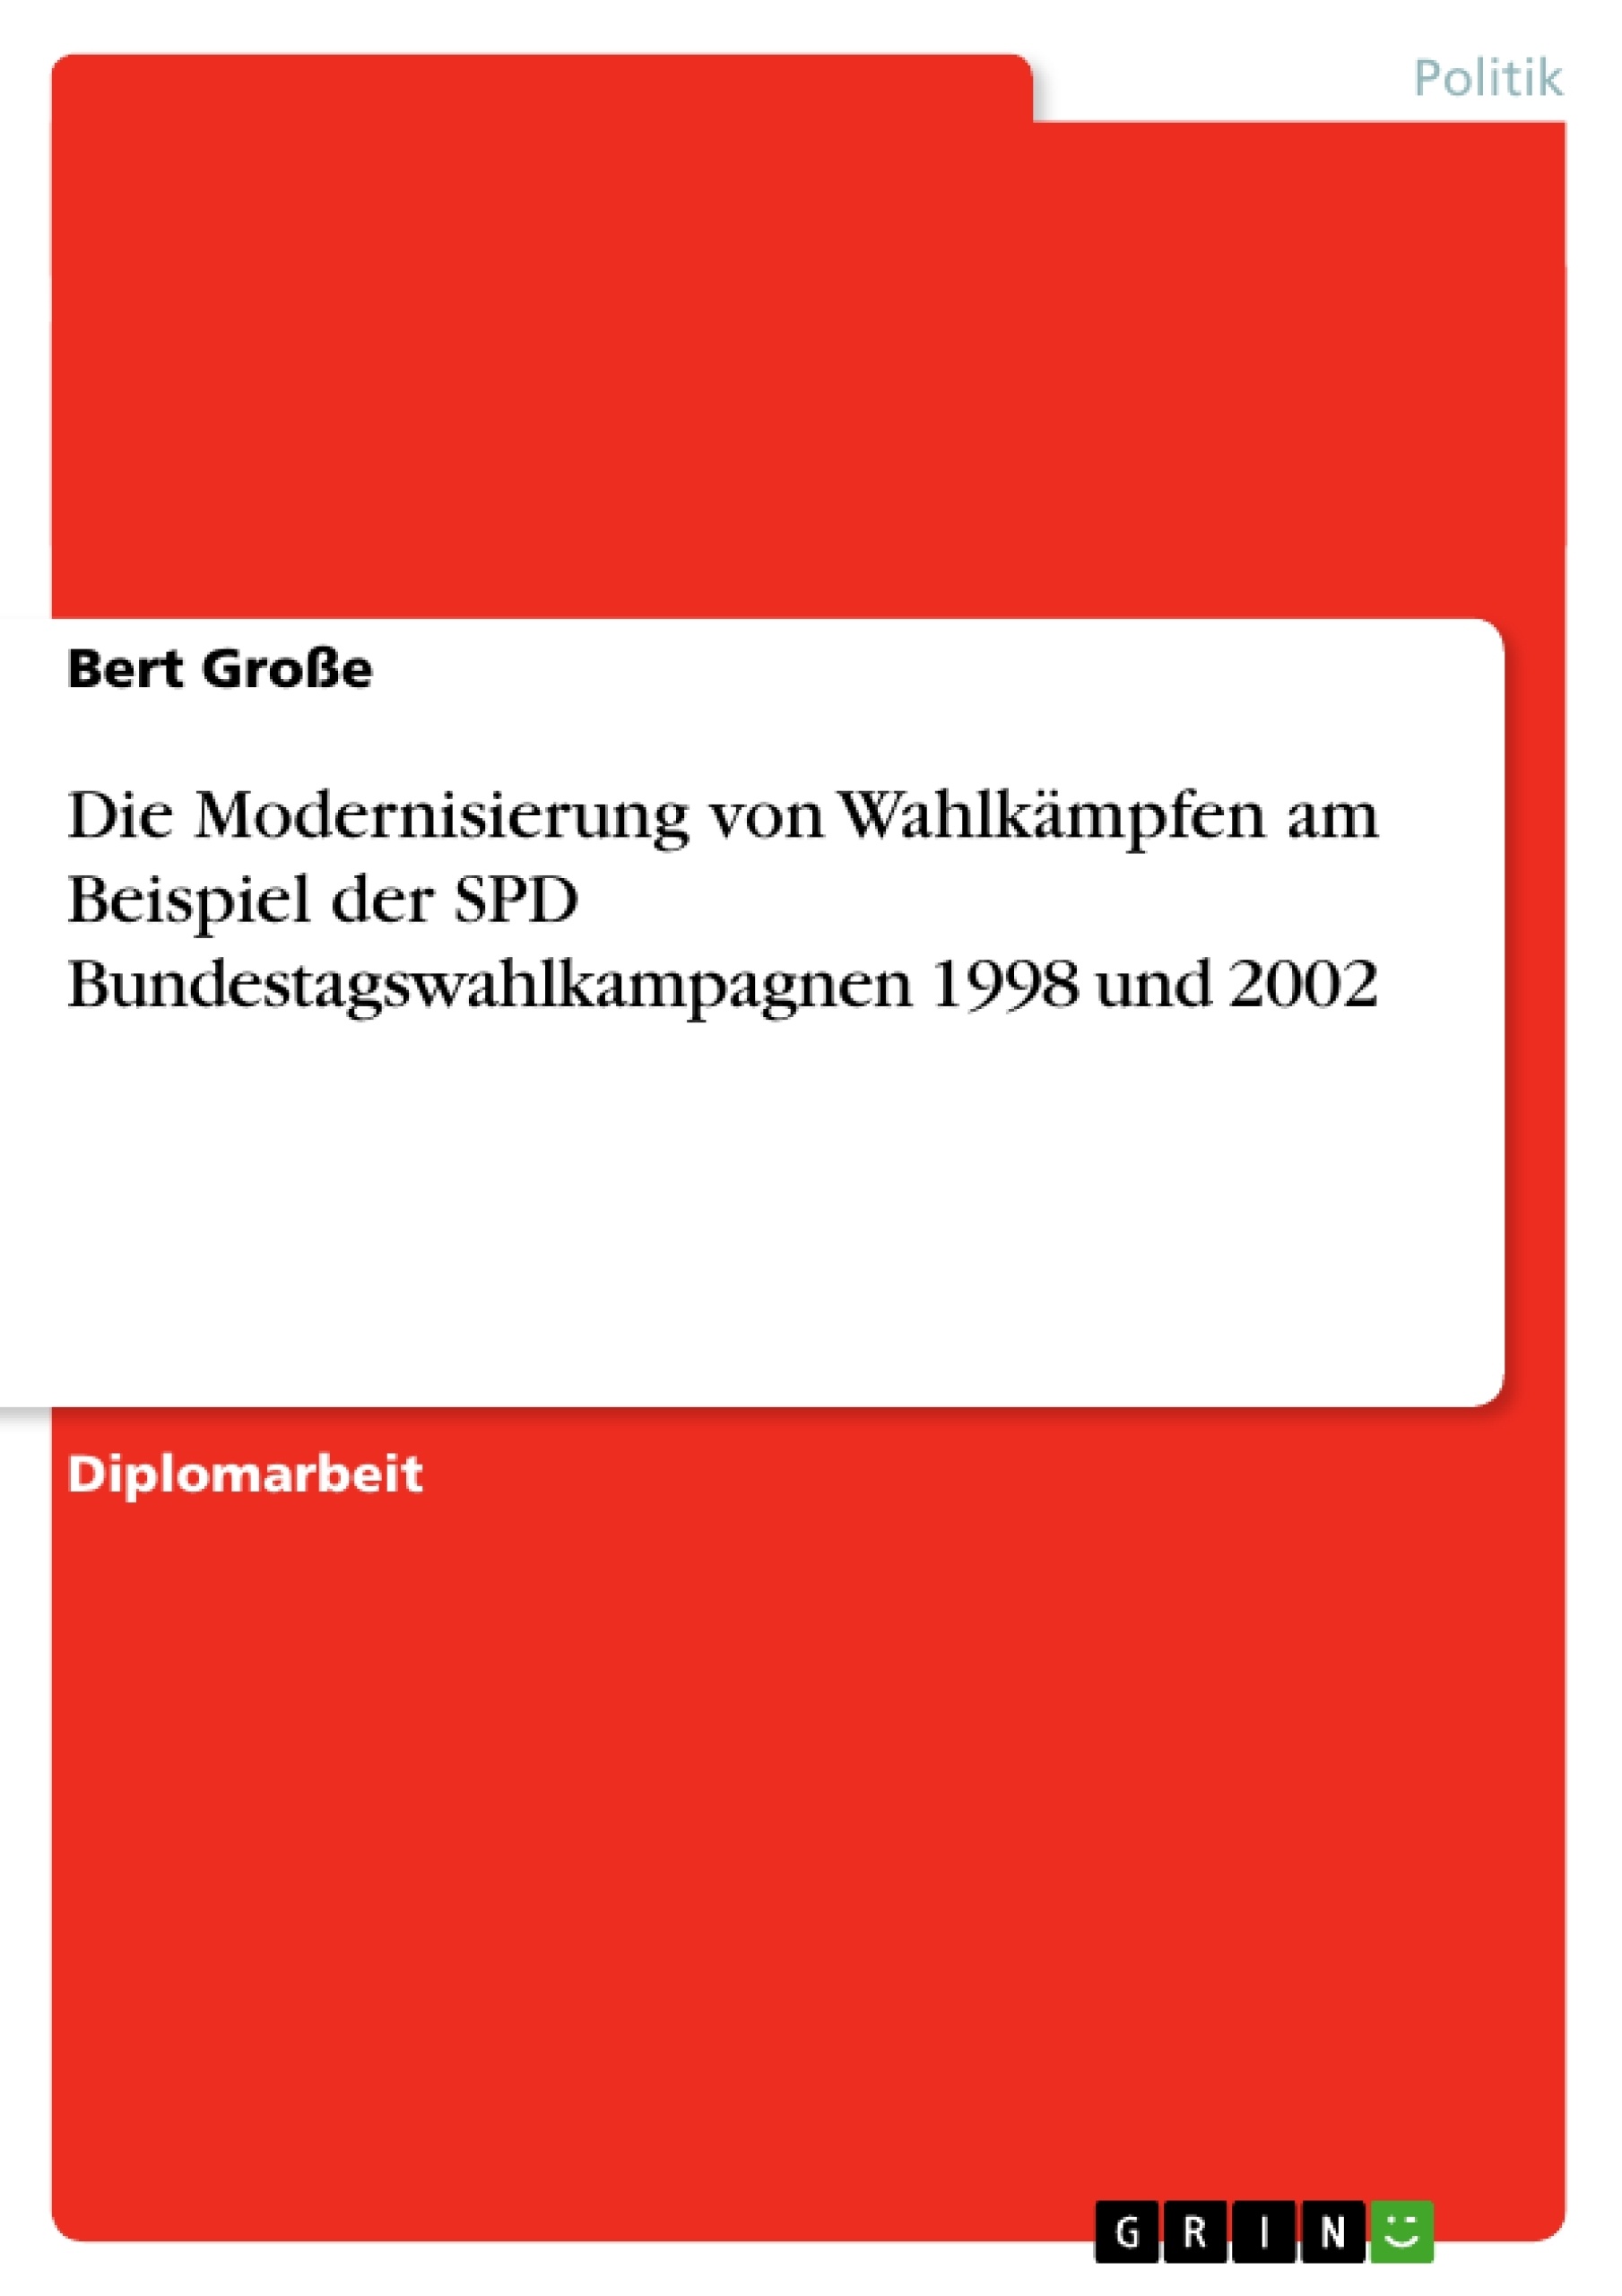 Title: Die Modernisierung von Wahlkämpfen am Beispiel der SPD Bundestagswahlkampagnen 1998 und 2002